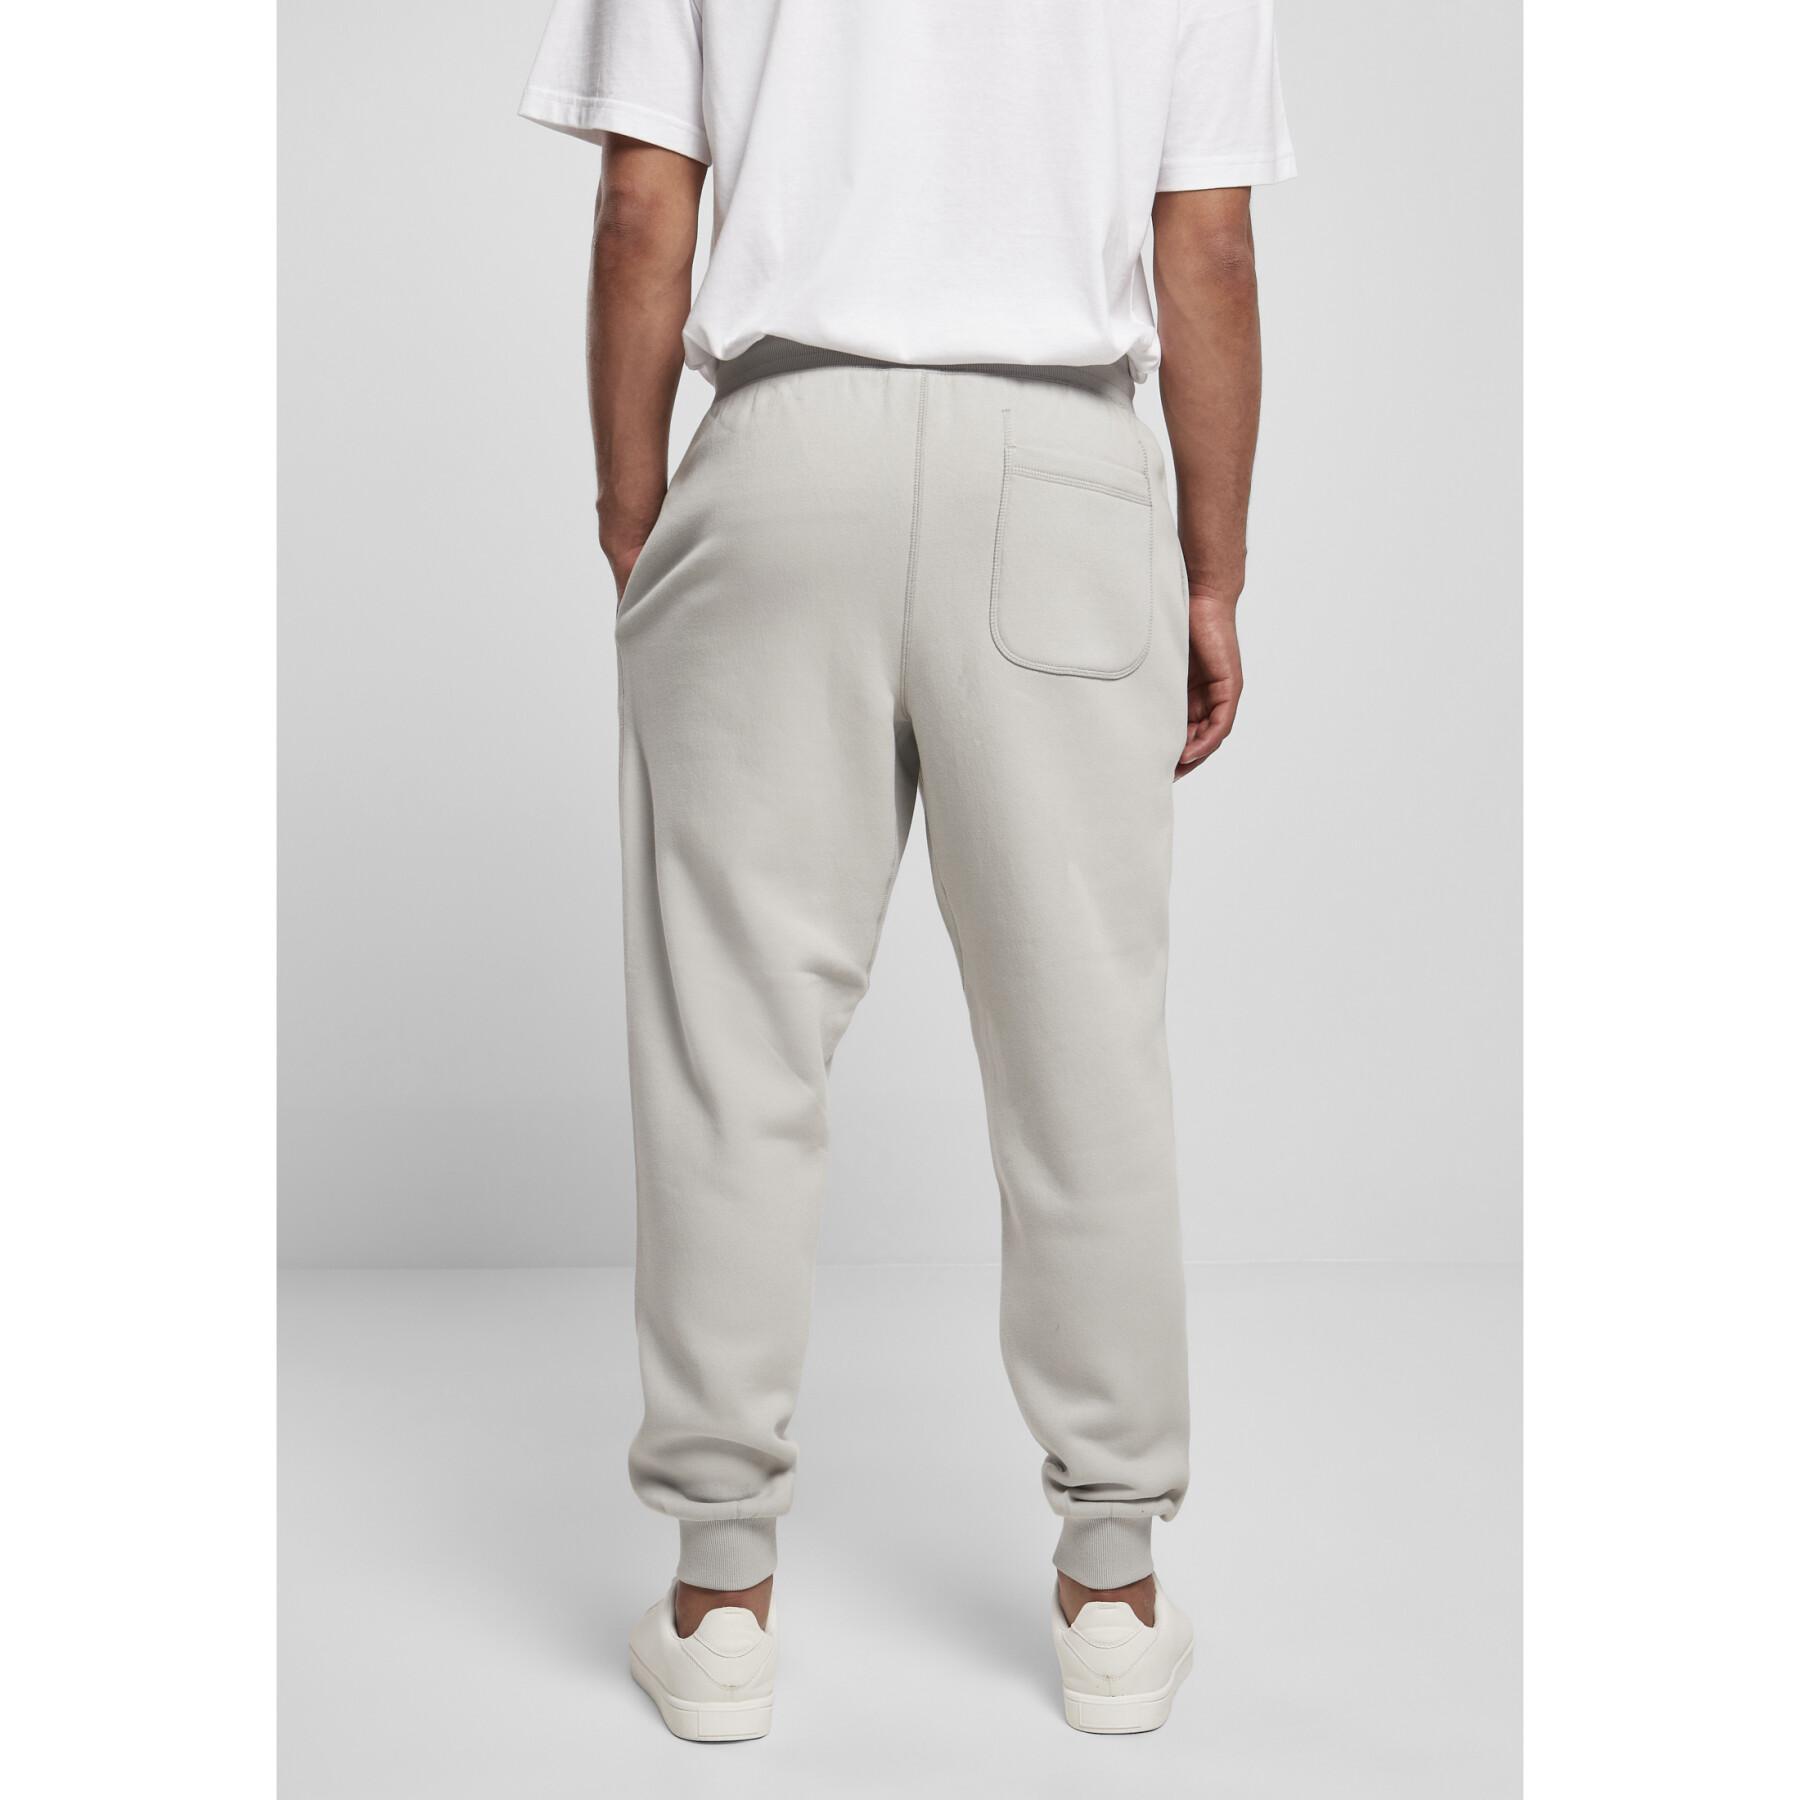 Pantalon Urban Classics basic-grandes tailles